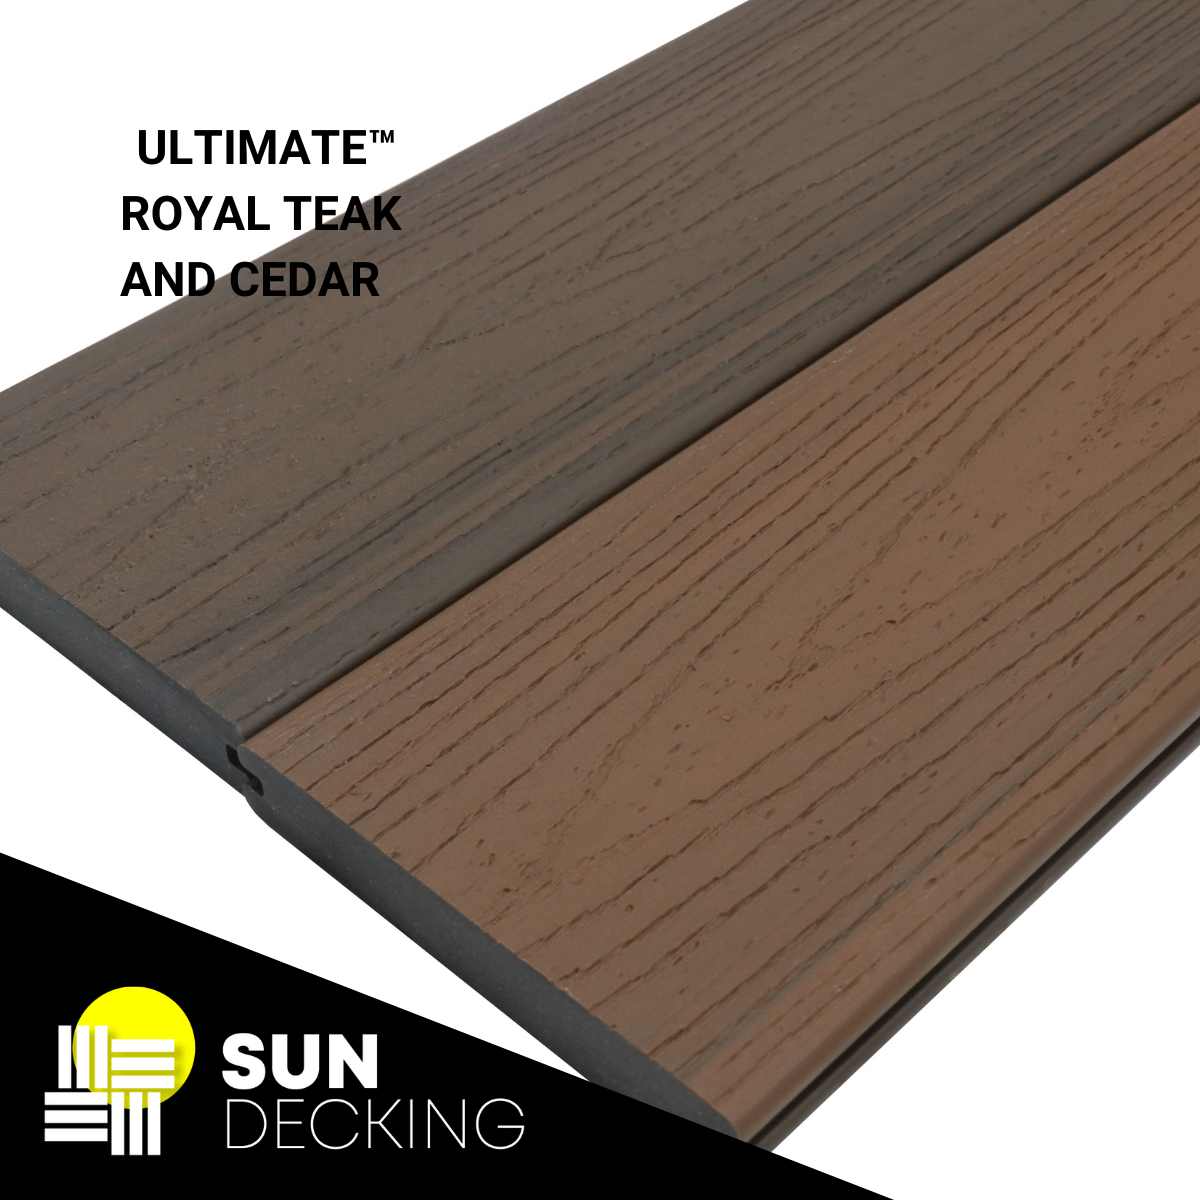 Ultimate Royal Teak and Cedar composite boards